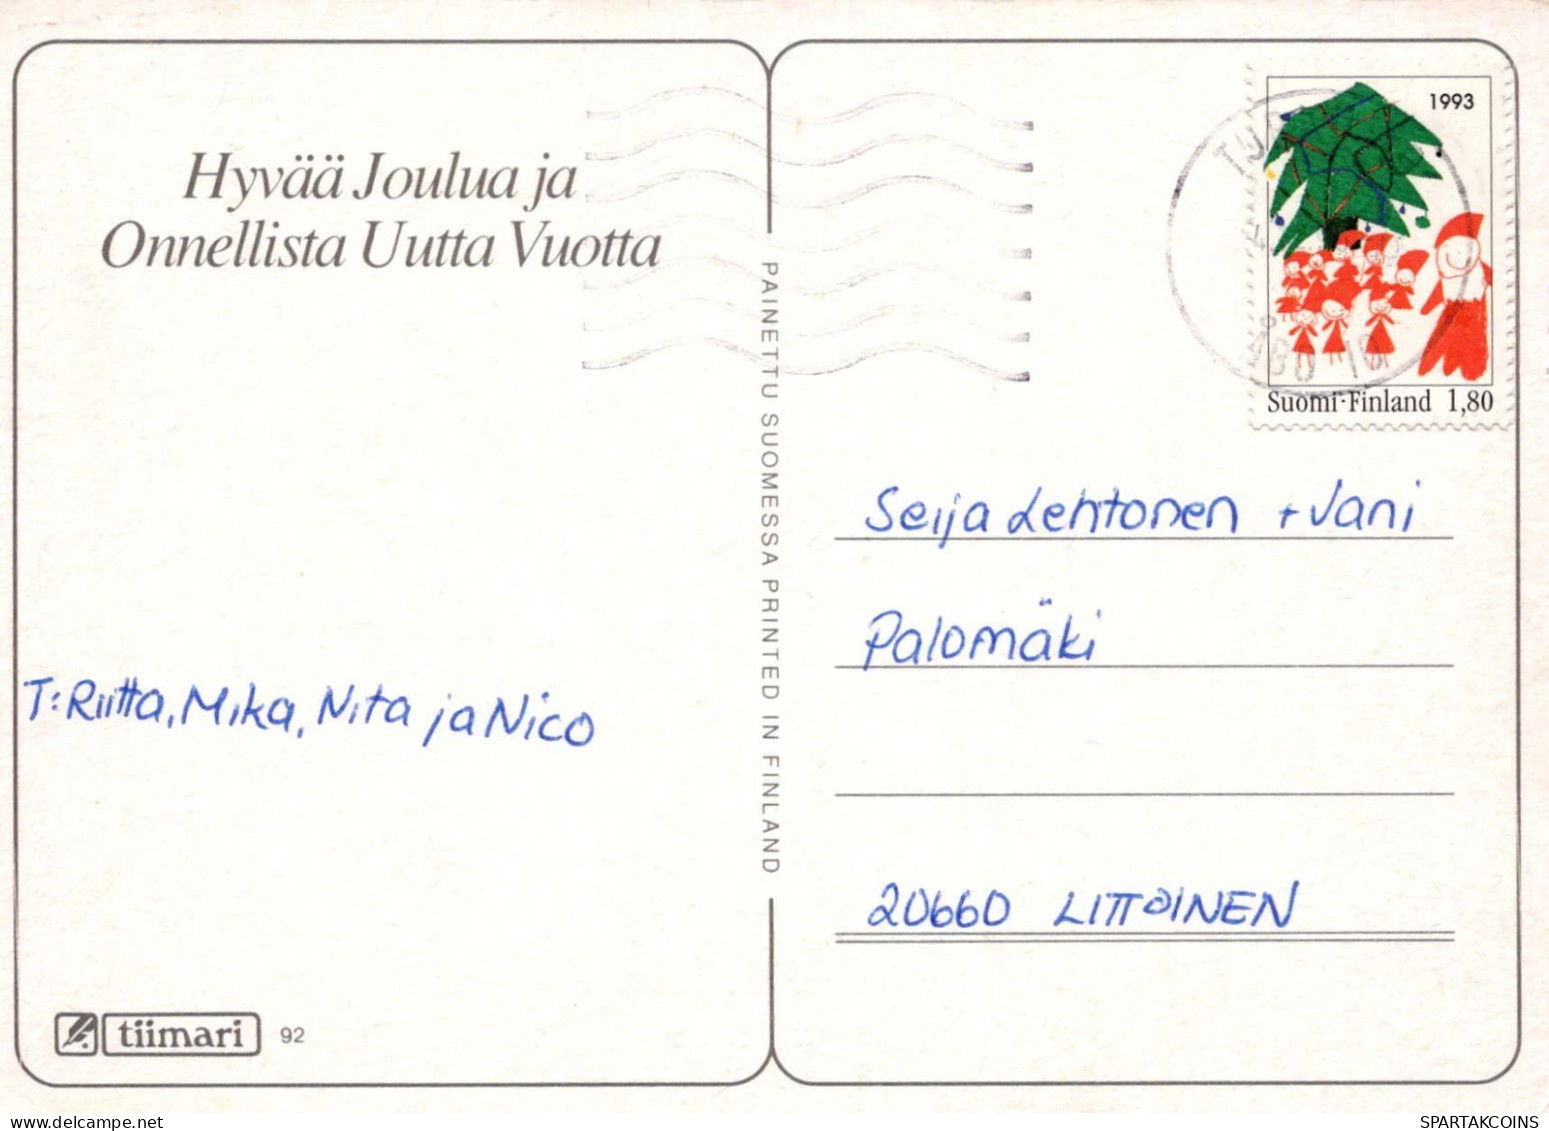 Neujahr Weihnachten SCHNEEMANN Vintage Ansichtskarte Postkarte CPSM #PAZ609.A - Neujahr